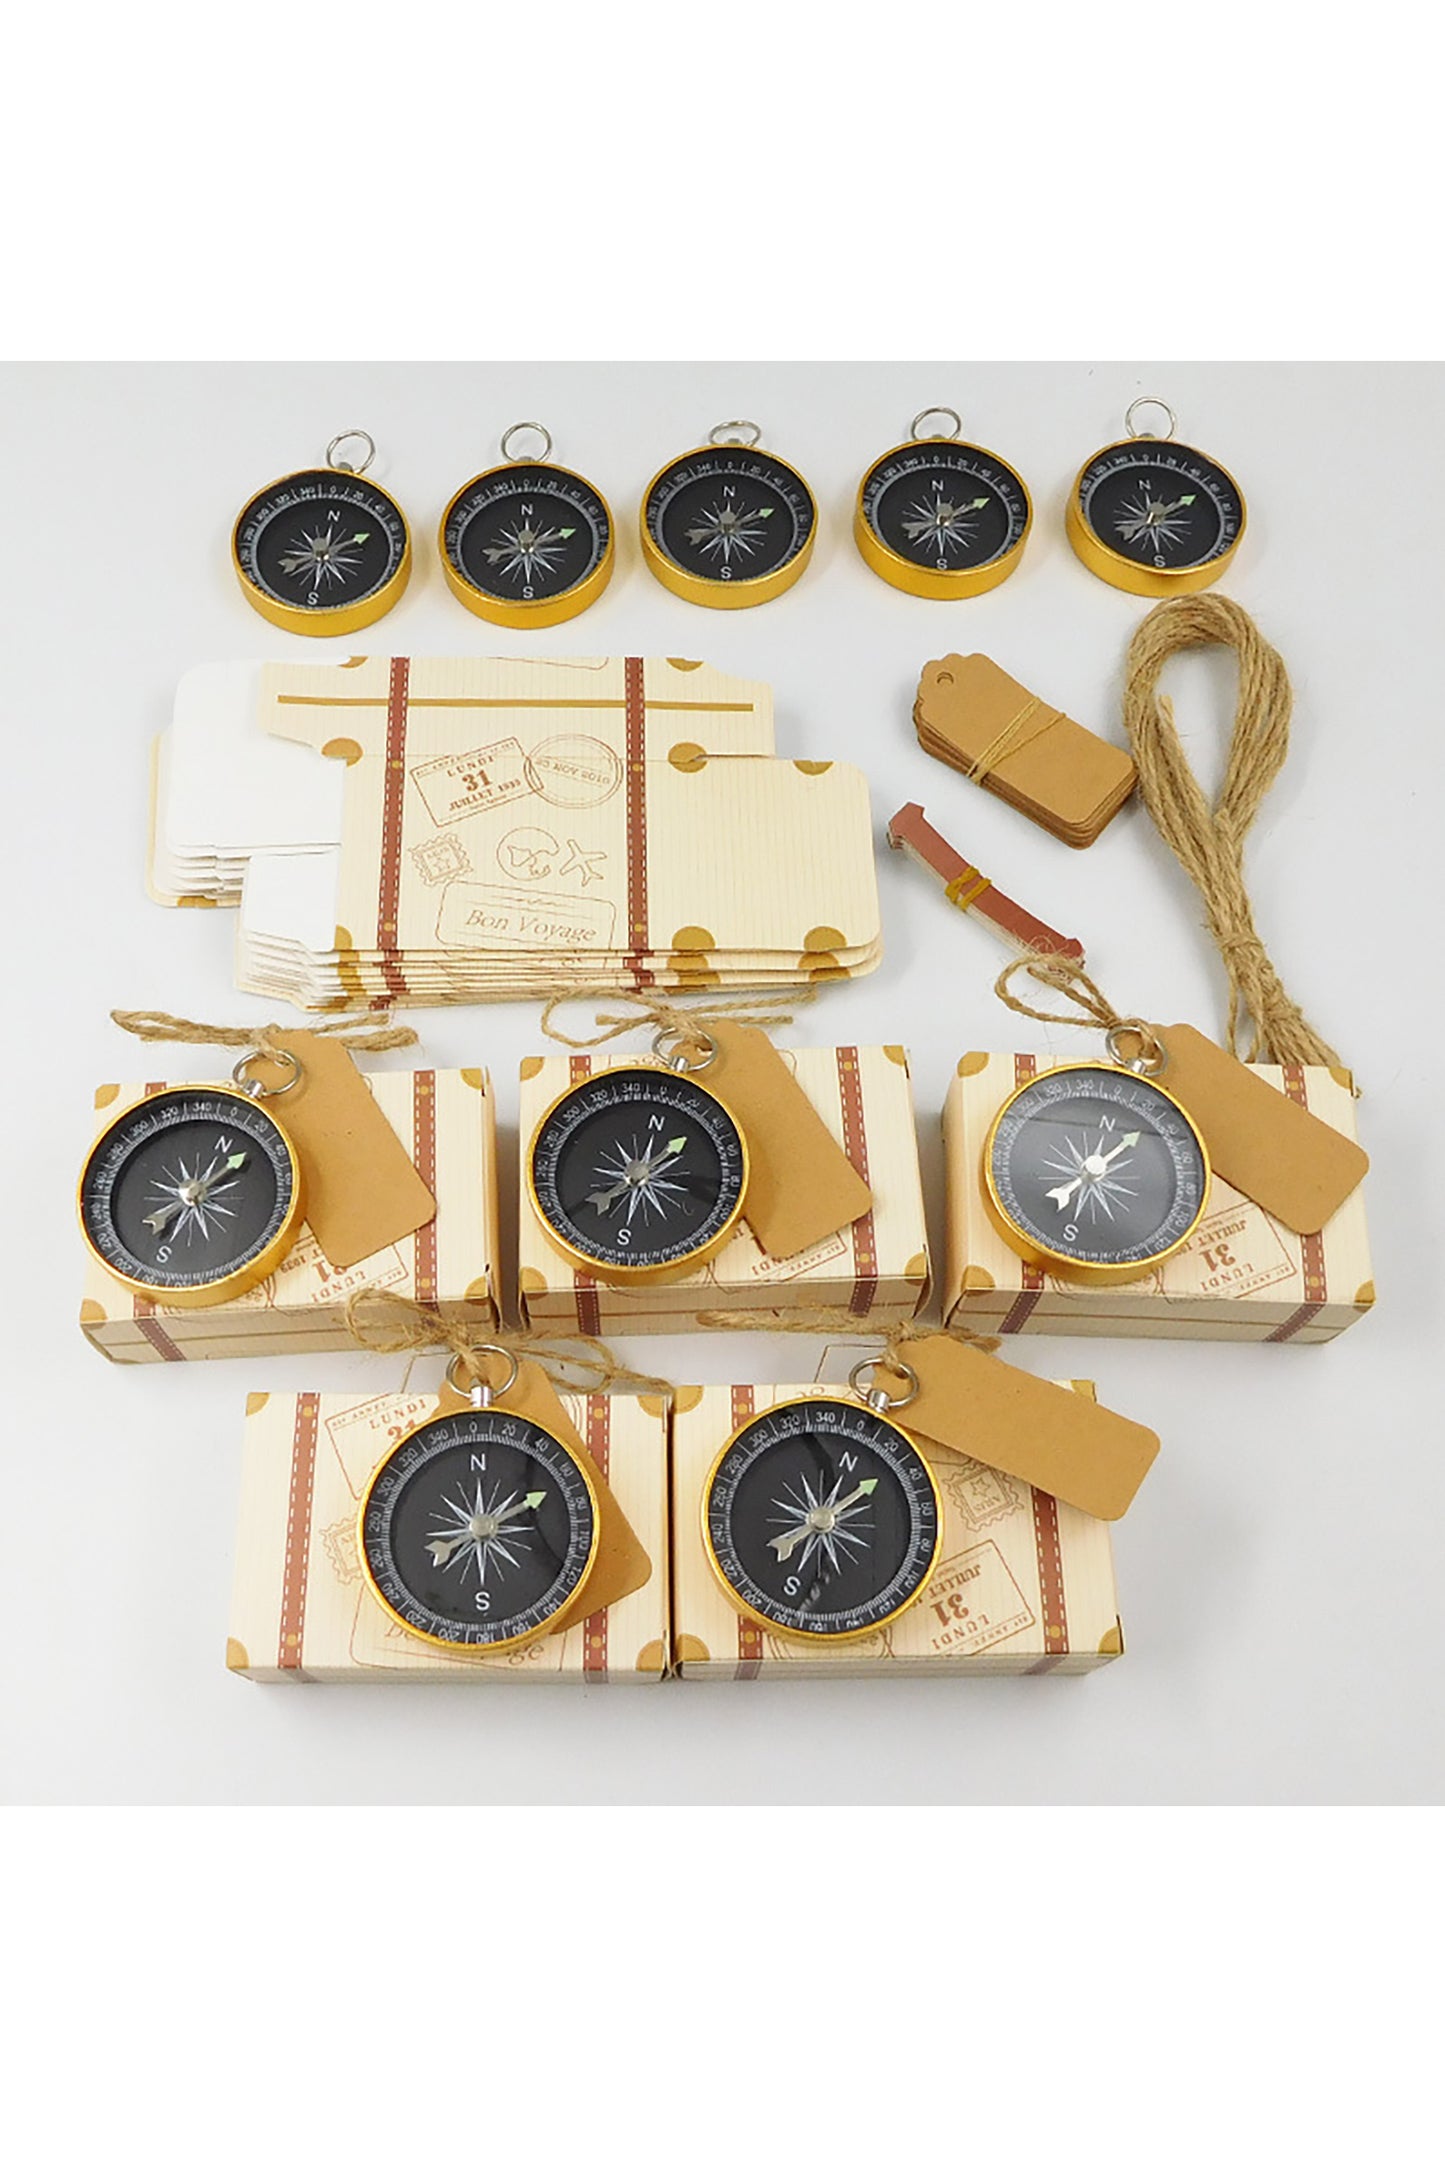 Vintage Suitcase Design Favor Box with Compass CGF0245 (Set of 12 pcs)